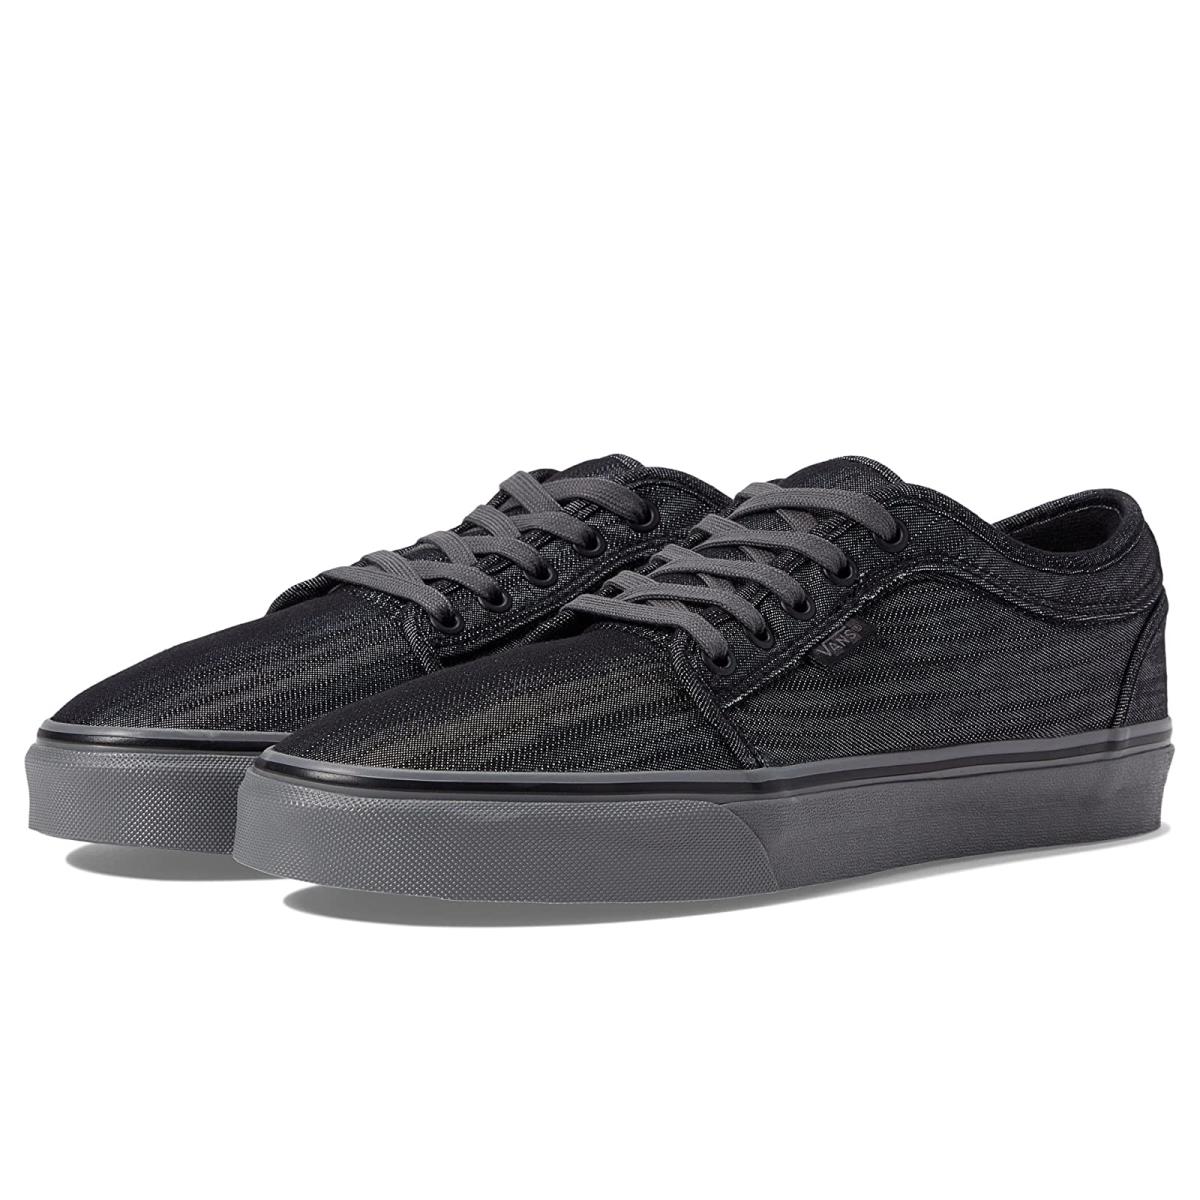 Man`s Sneakers Athletic Shoes Vans Skate Chukka Low Black/Grey/Denim